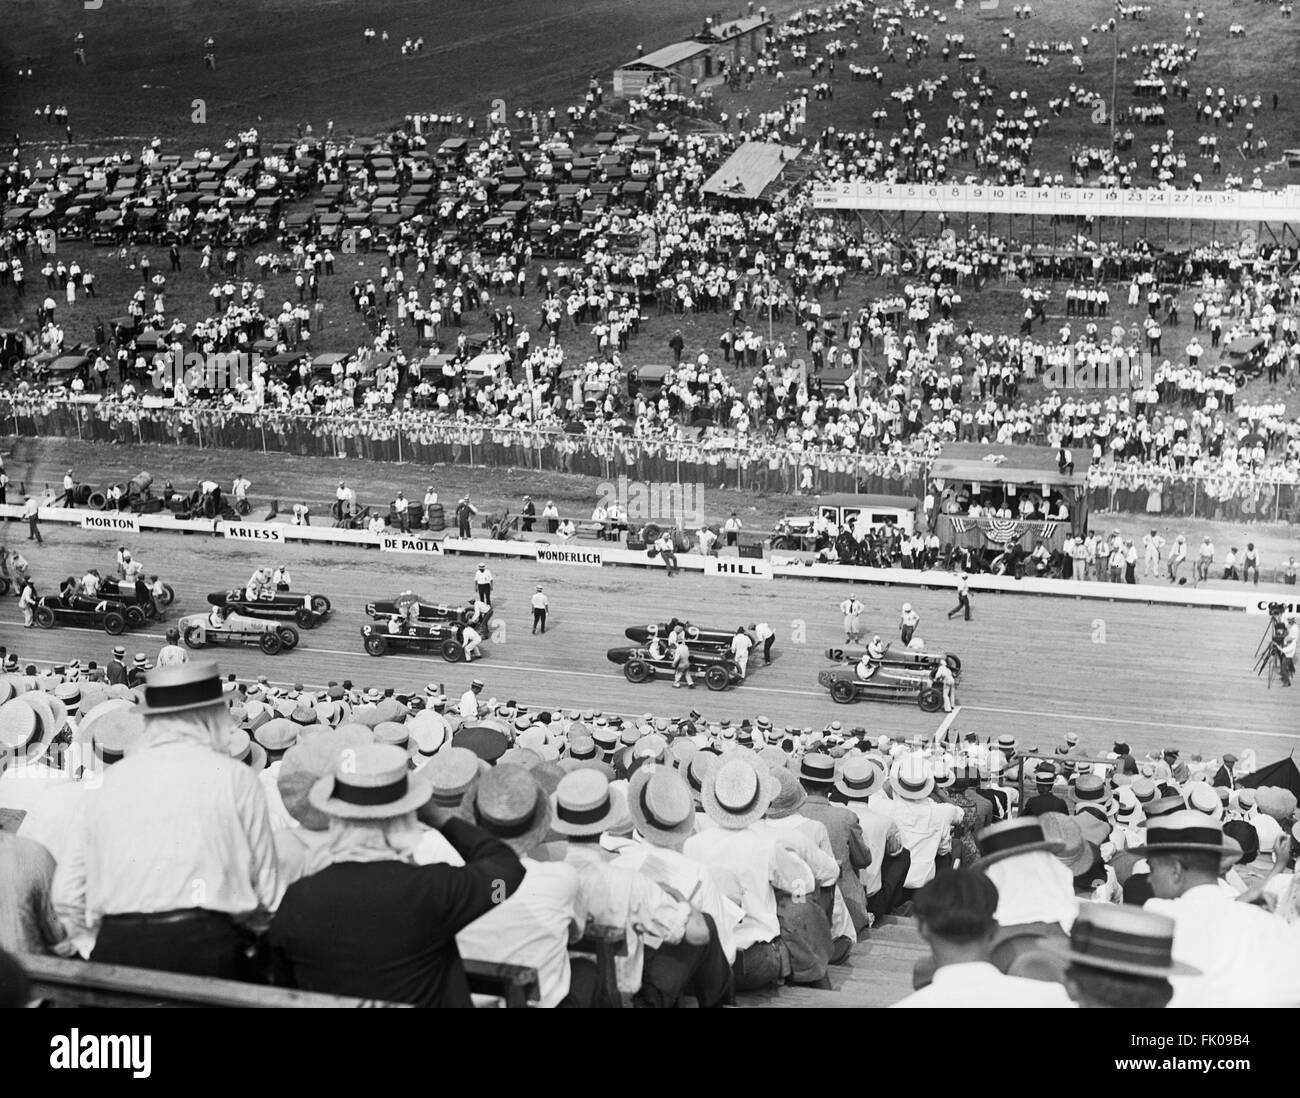 Race Cars on Race Track, États-Unis, Harris & Ewing, 1925 Banque D'Images